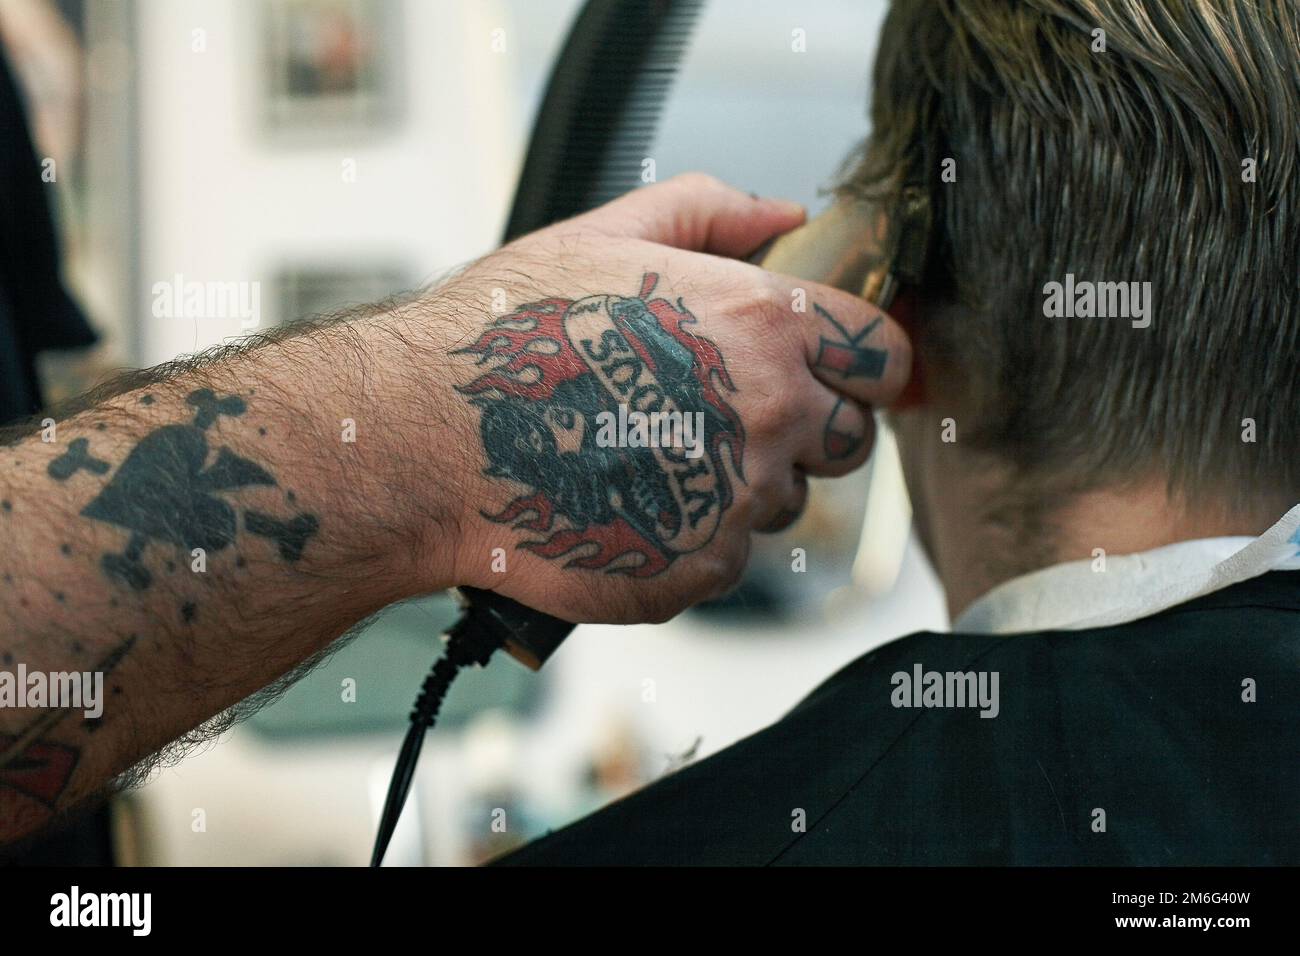 Der Friseur schneidet jungen Männern die Haare. Rückansicht eines Mannes, der im Friseursalon mit einer Haarschneidemaschine kurze Haare schneidet. Stockfoto